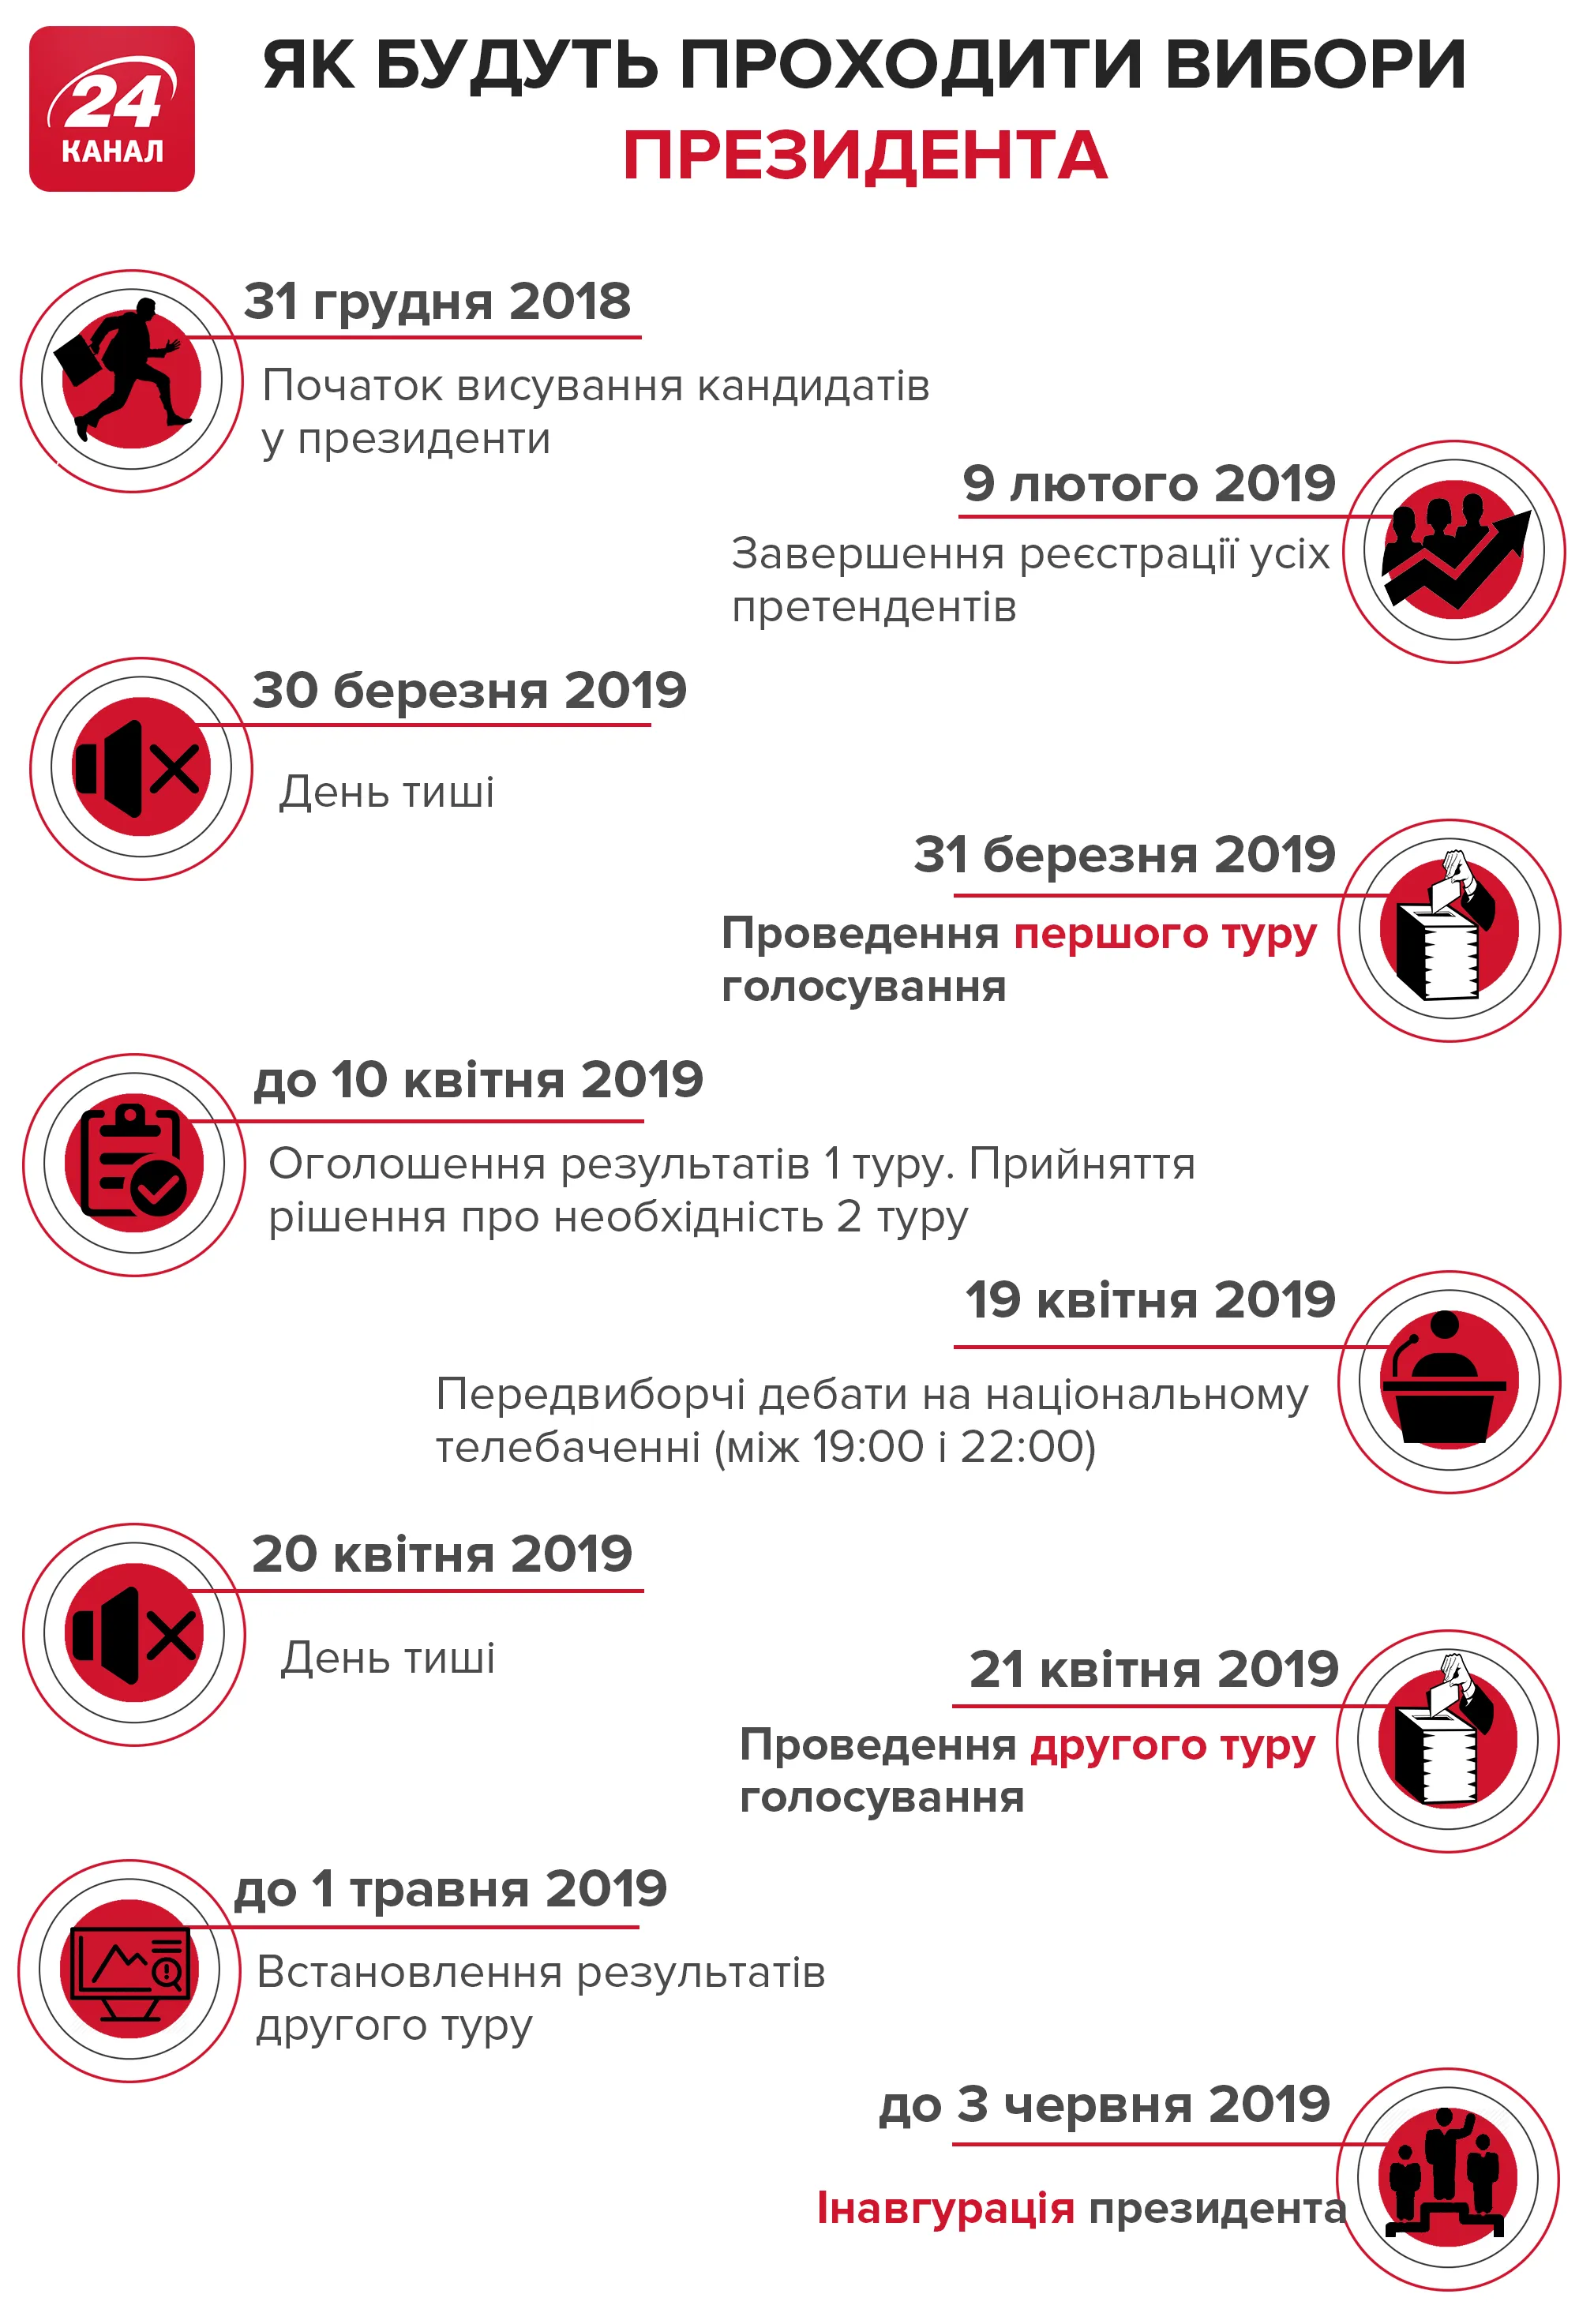 вибори в Україні, президентські вибори 2019